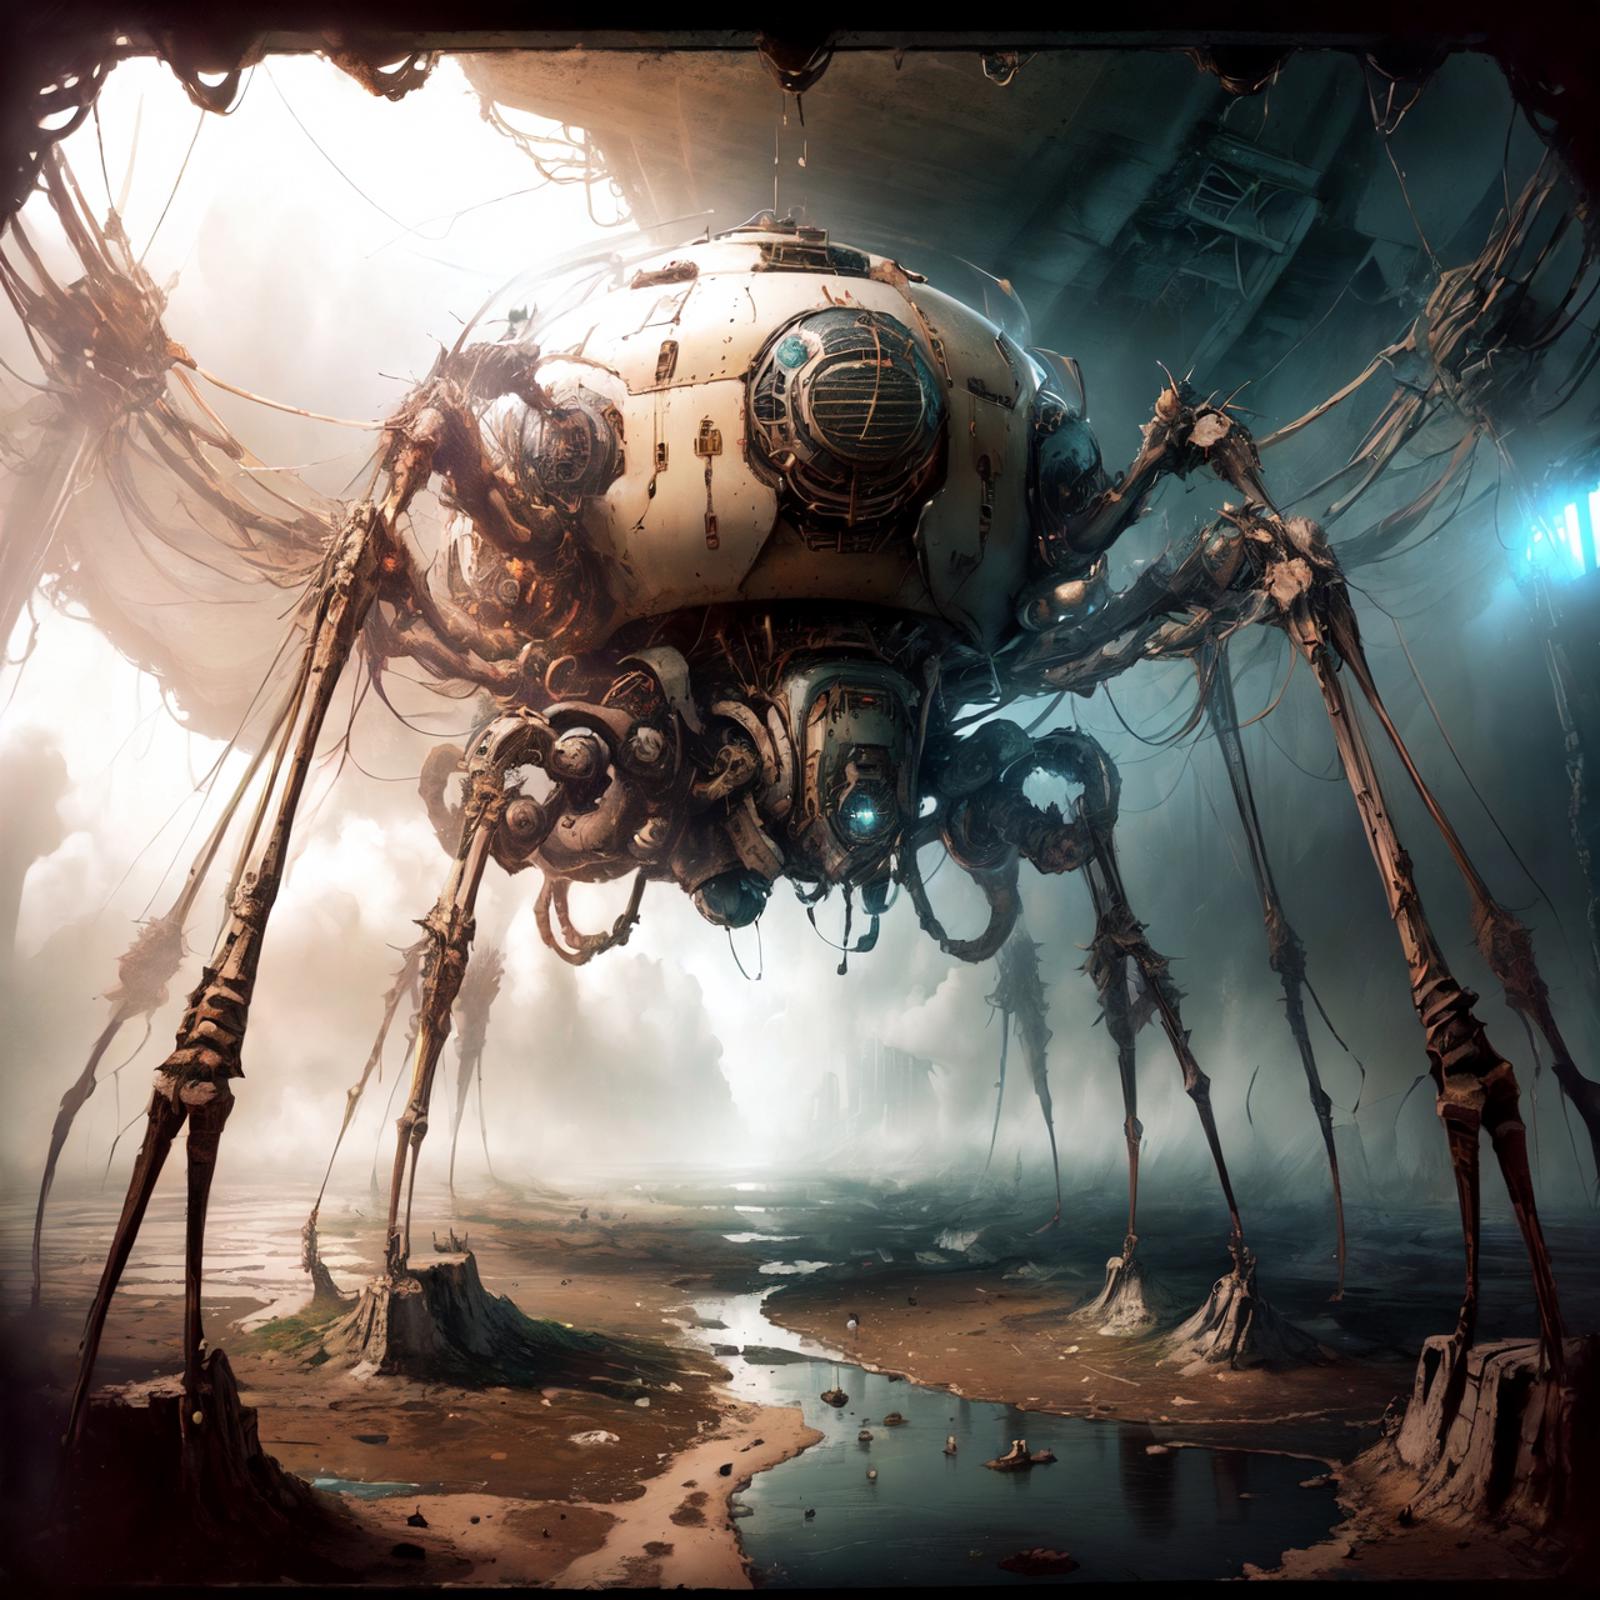 ArachnoPhobiaAI - konyconi image by Cwieku